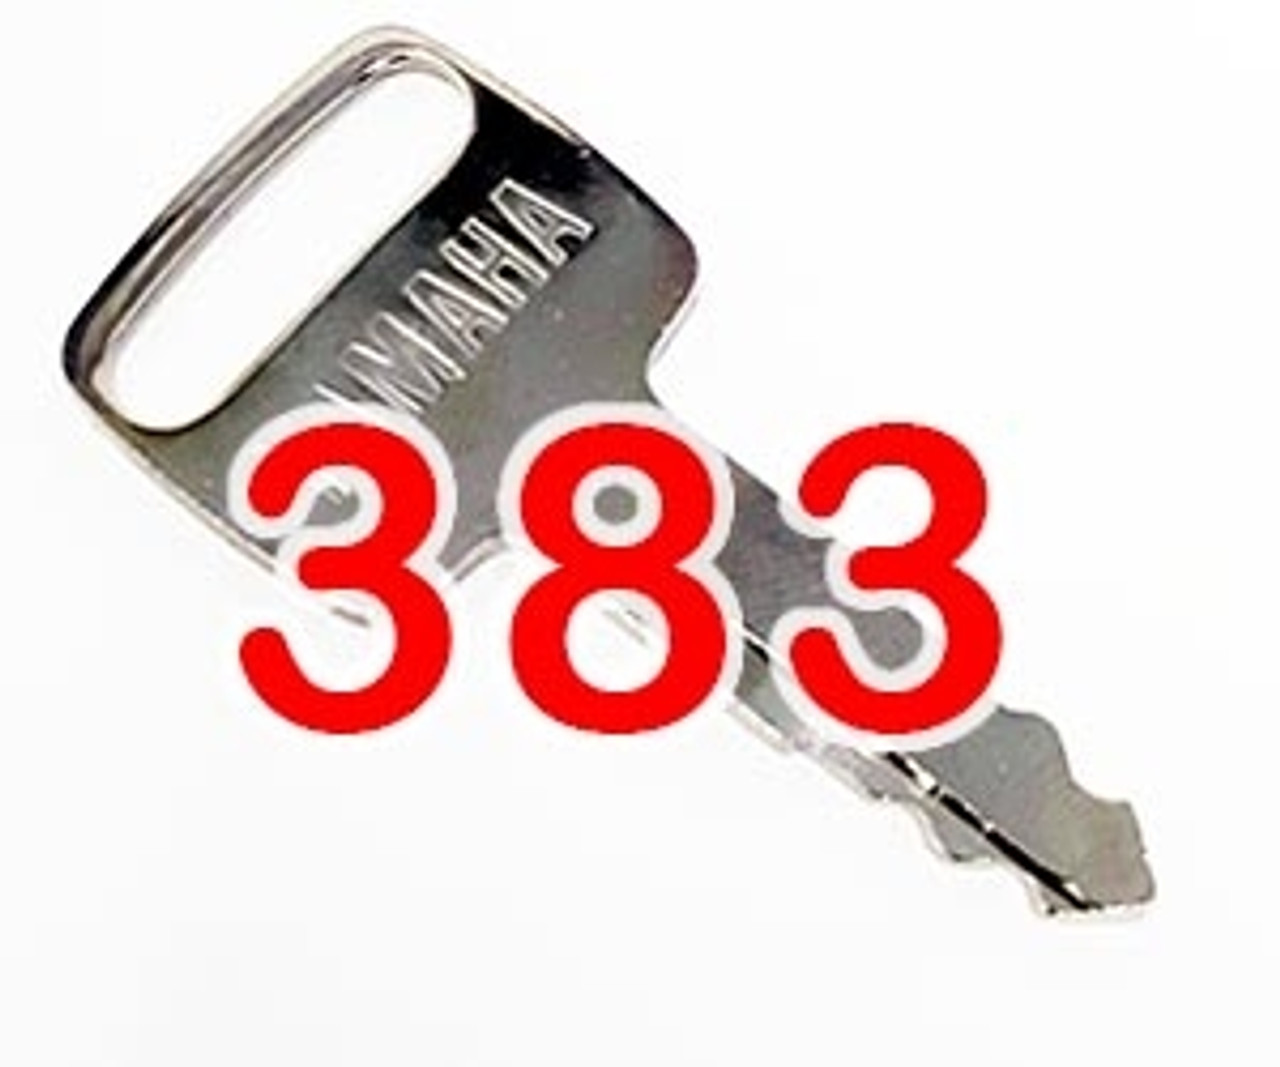 Yamaha OEM KEY 90890-55880-00 With Key-cap and floating keychain 383 